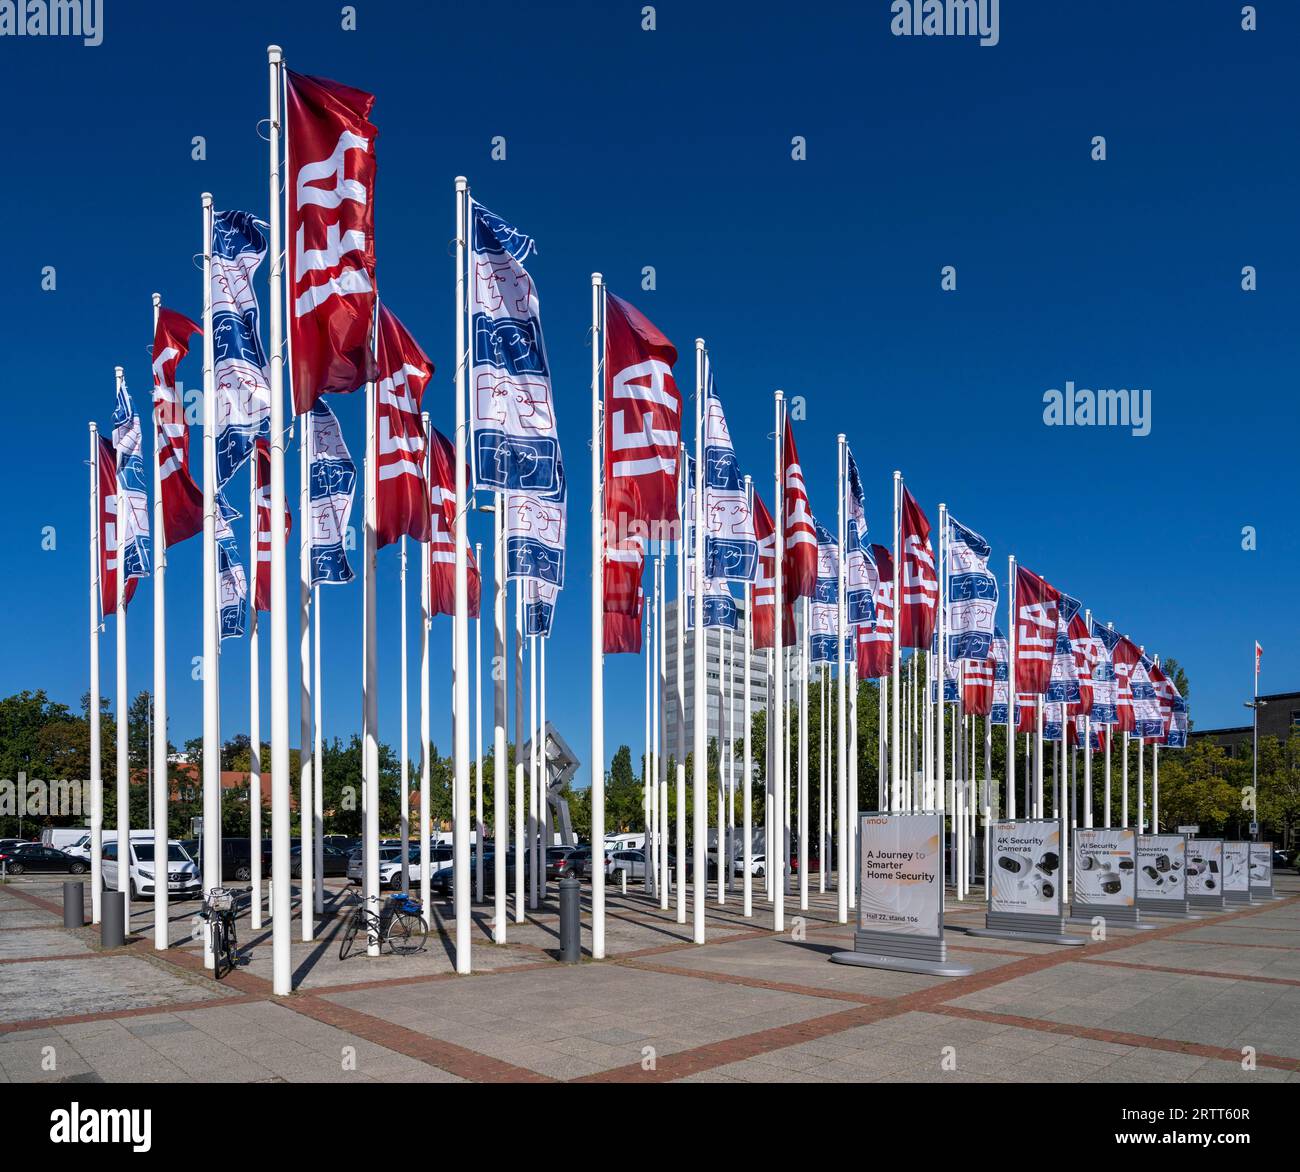 Flagpoles with IFA flags, Hammarskjoeldplatz, Messehallen am Funkturm, Berlin, Germany Stock Photo